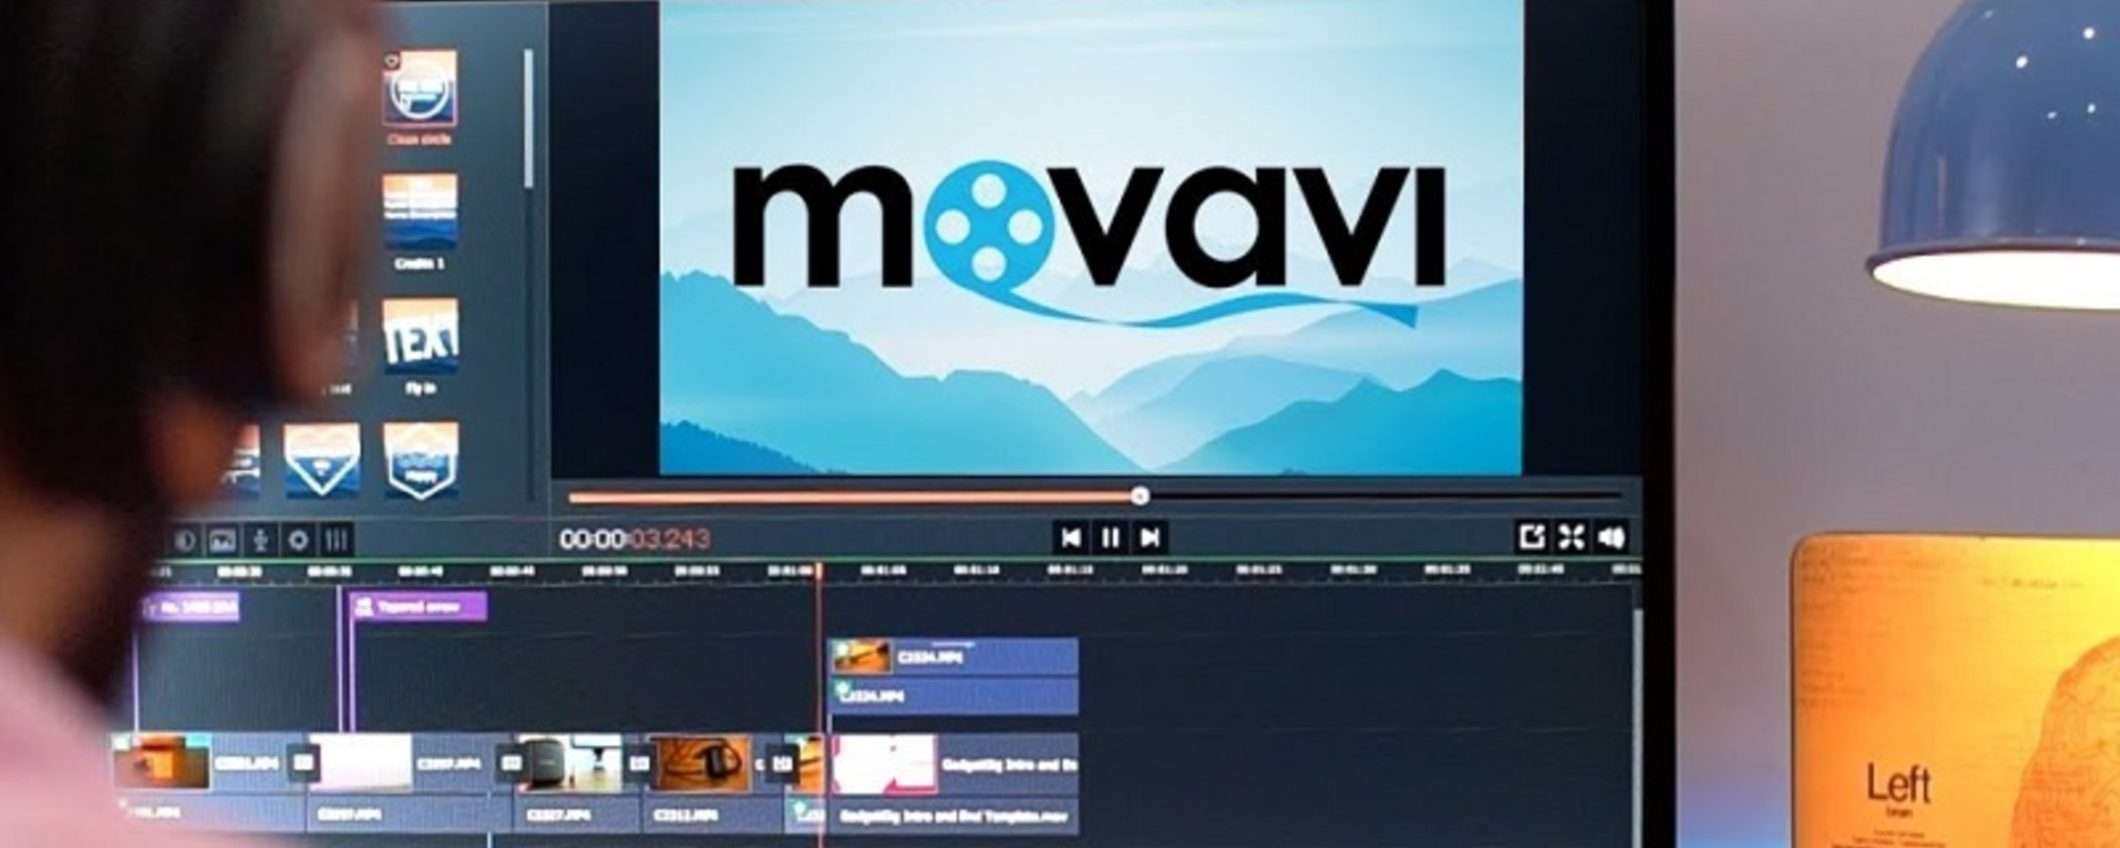 Movavi: il video editor con uno sconto da non perdere